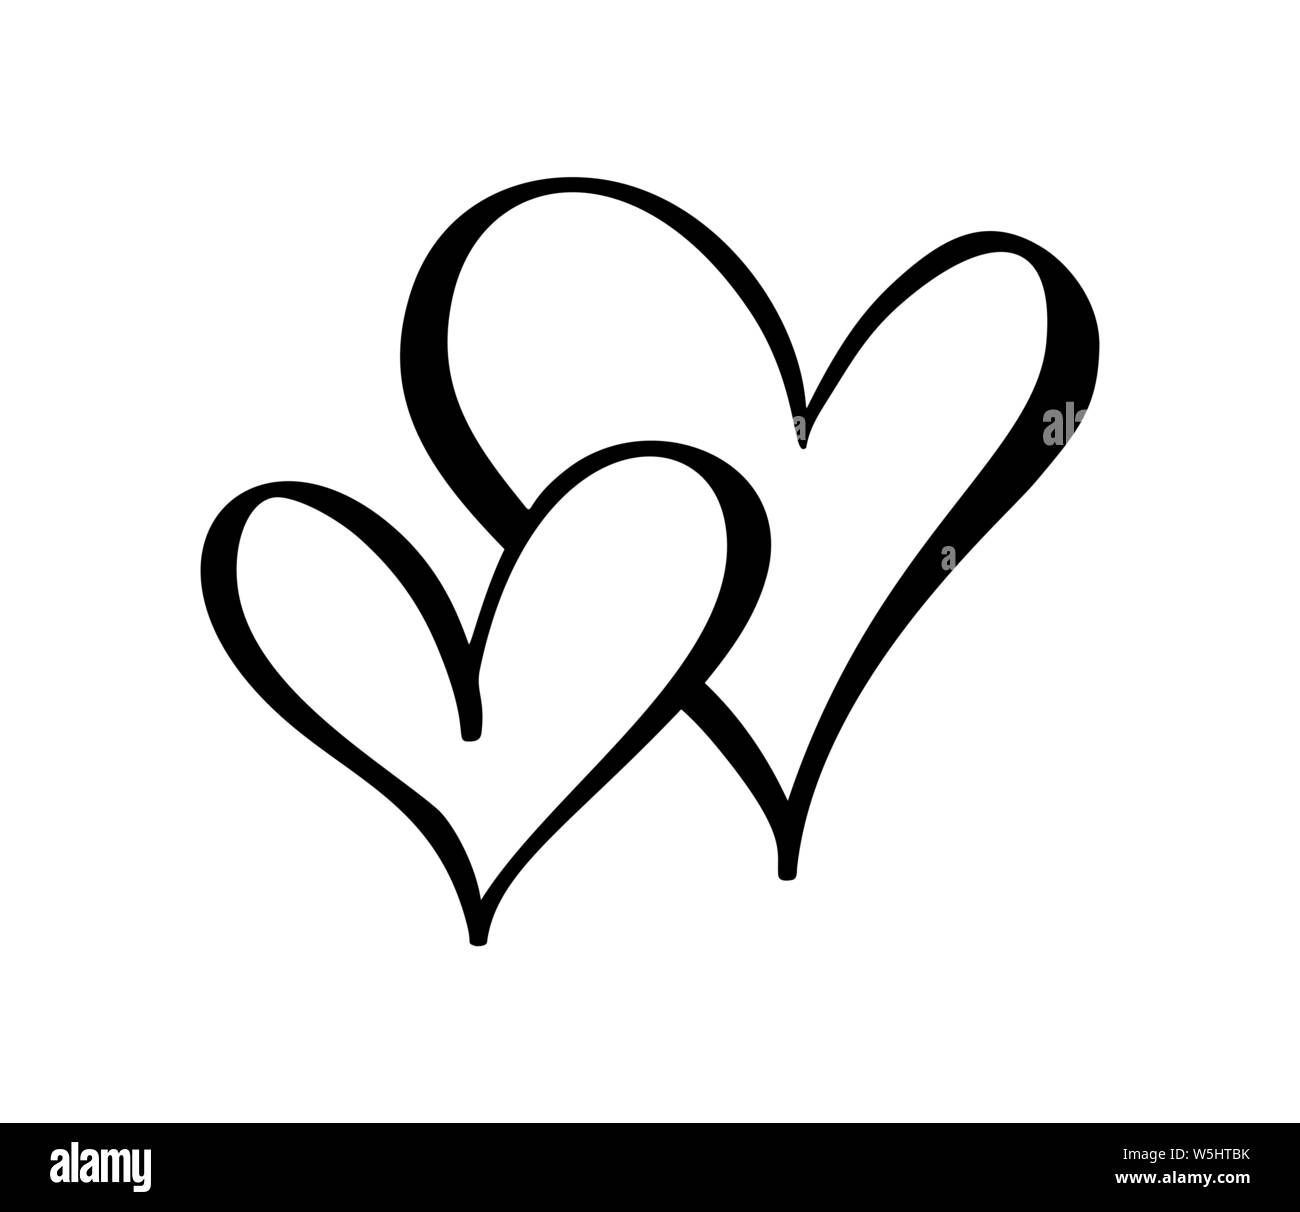 Hình biểu tượng trái tim đen (black heart icon): Hình biểu tượng trái tim đen đem đến sự khác biệt và tự tin cho bạn trong trang trí. Đây là biểu tượng vô cùng độc đáo, mang đến cho bạn cảm giác mạnh mẽ và bí ẩn đầy cuốn hút. Hãy chọn cho mình một biểu tượng trái tim đen để thể hiện tình yêu mà mình đang trao đi.